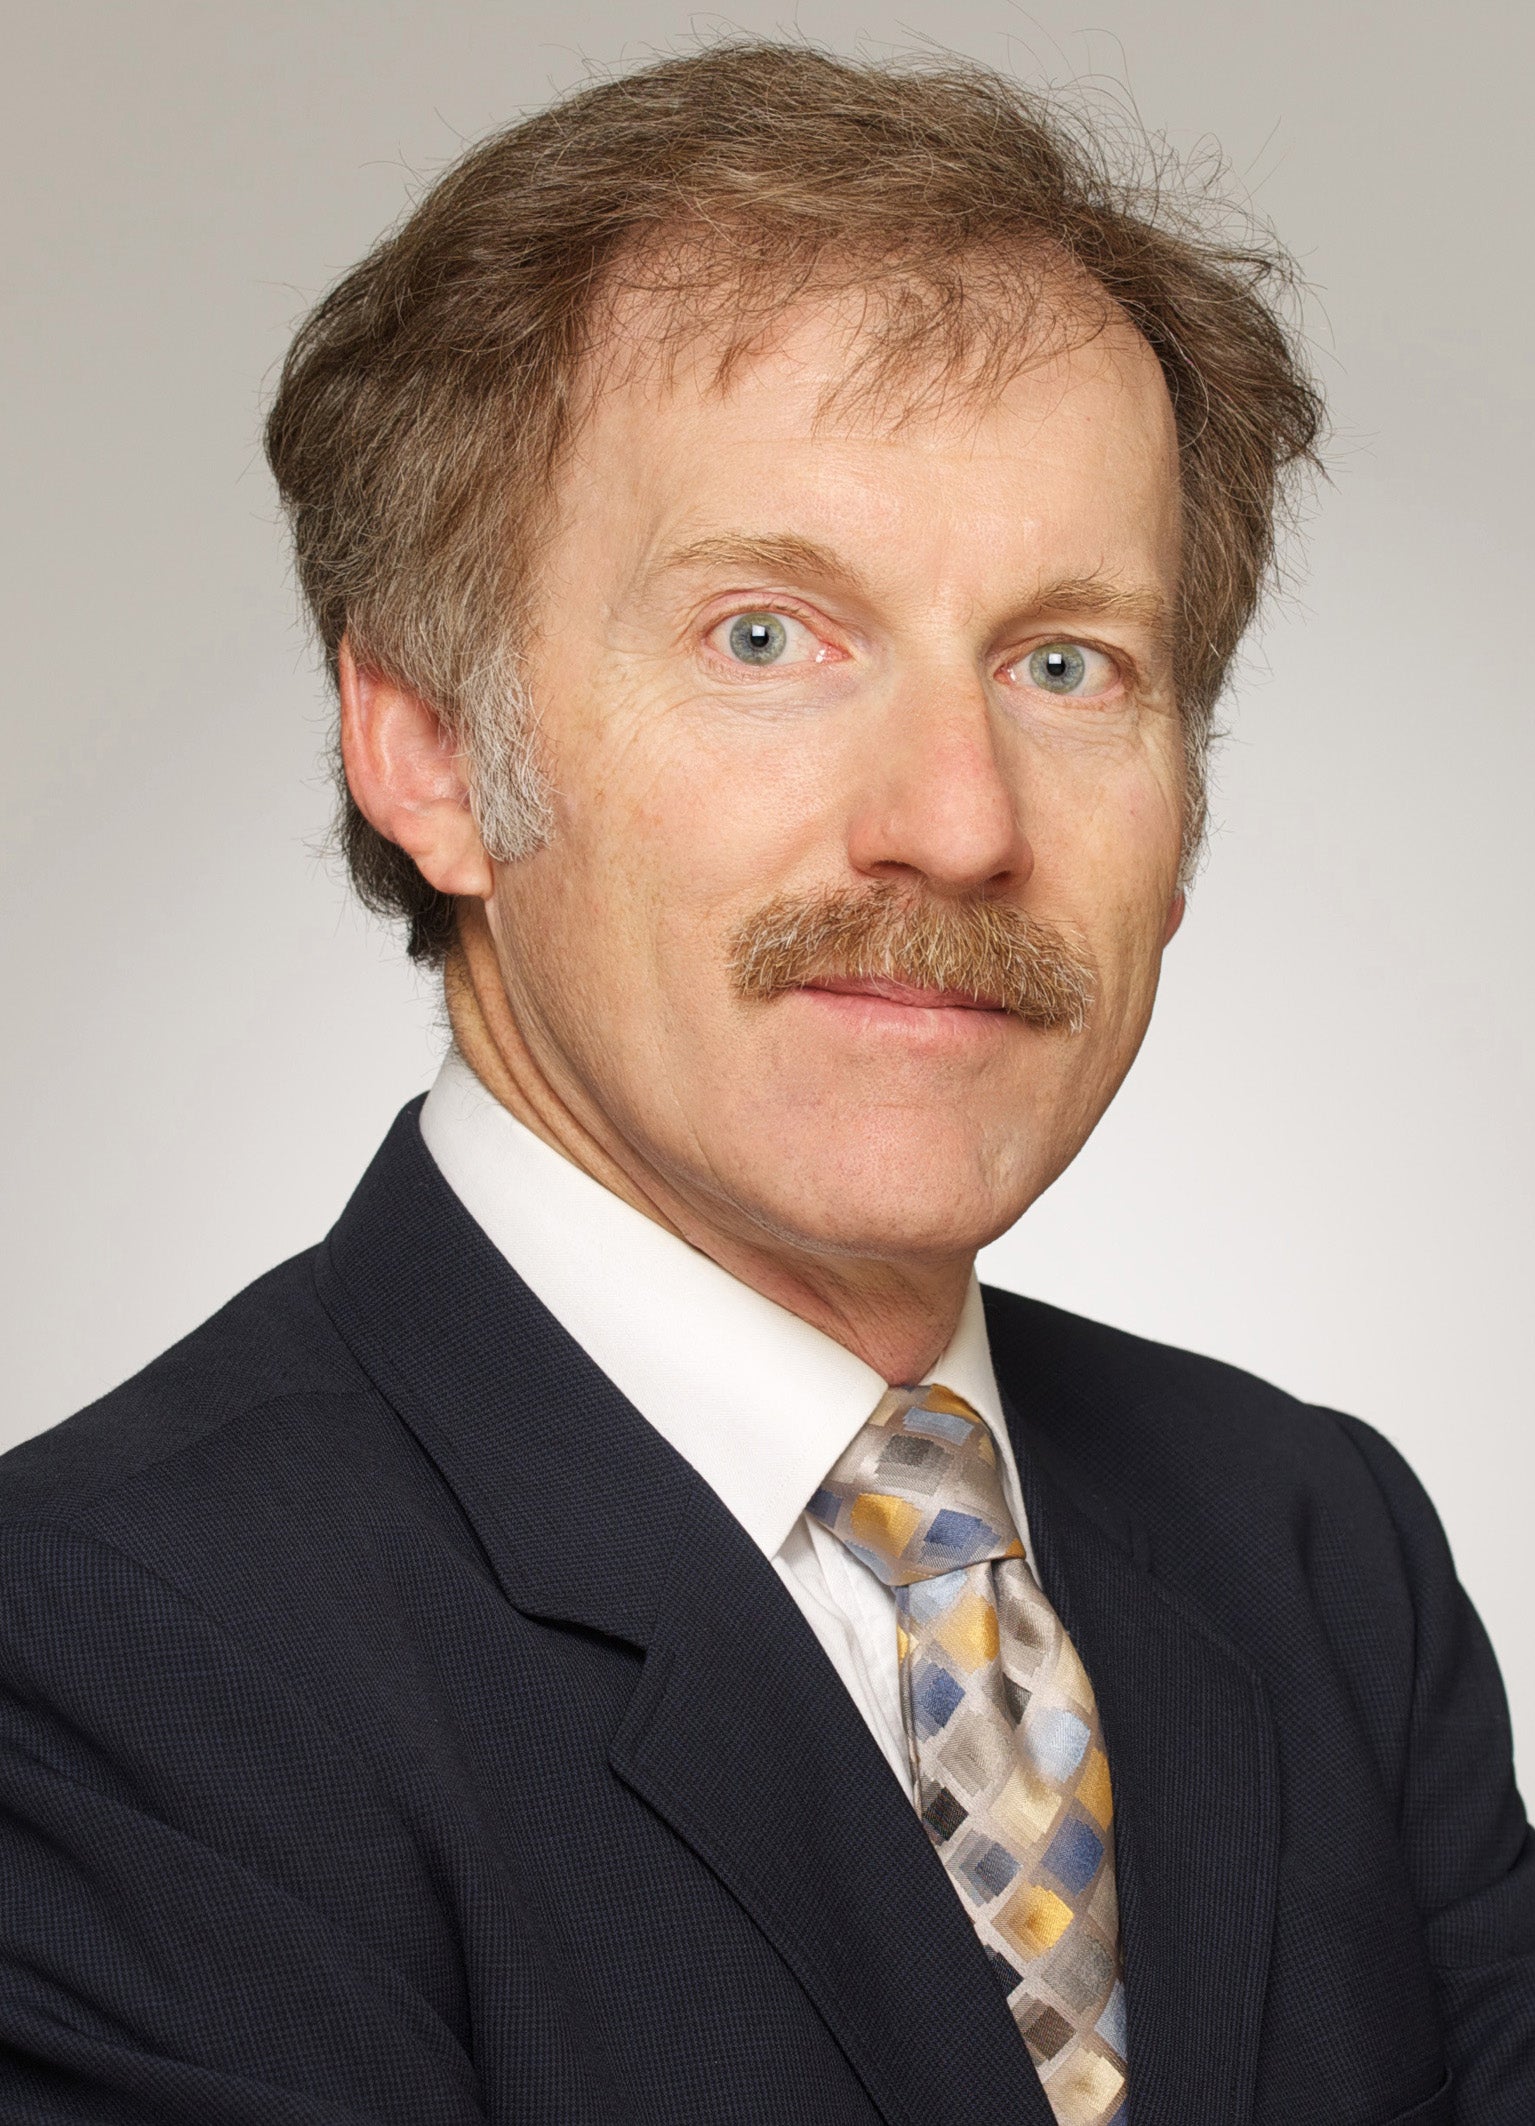 Professor Neal Stoughton